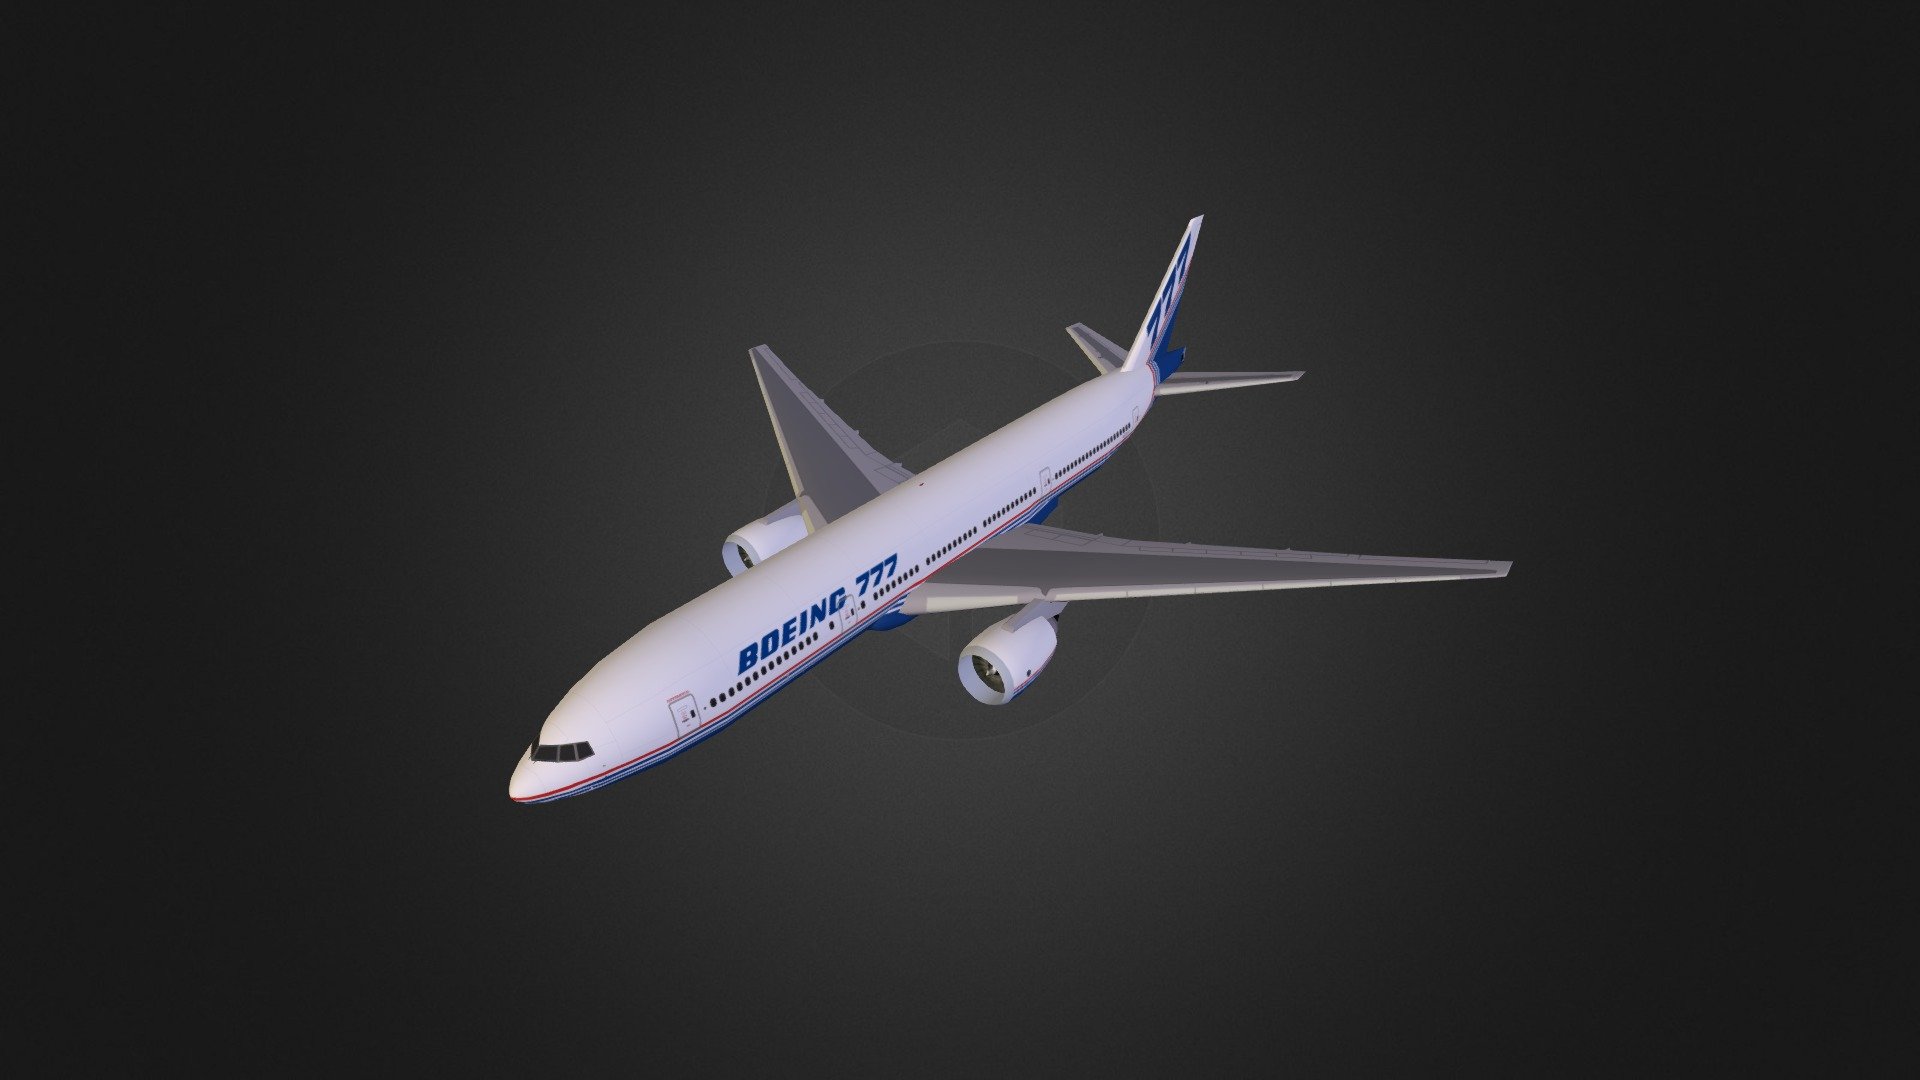 Boeing 777-200